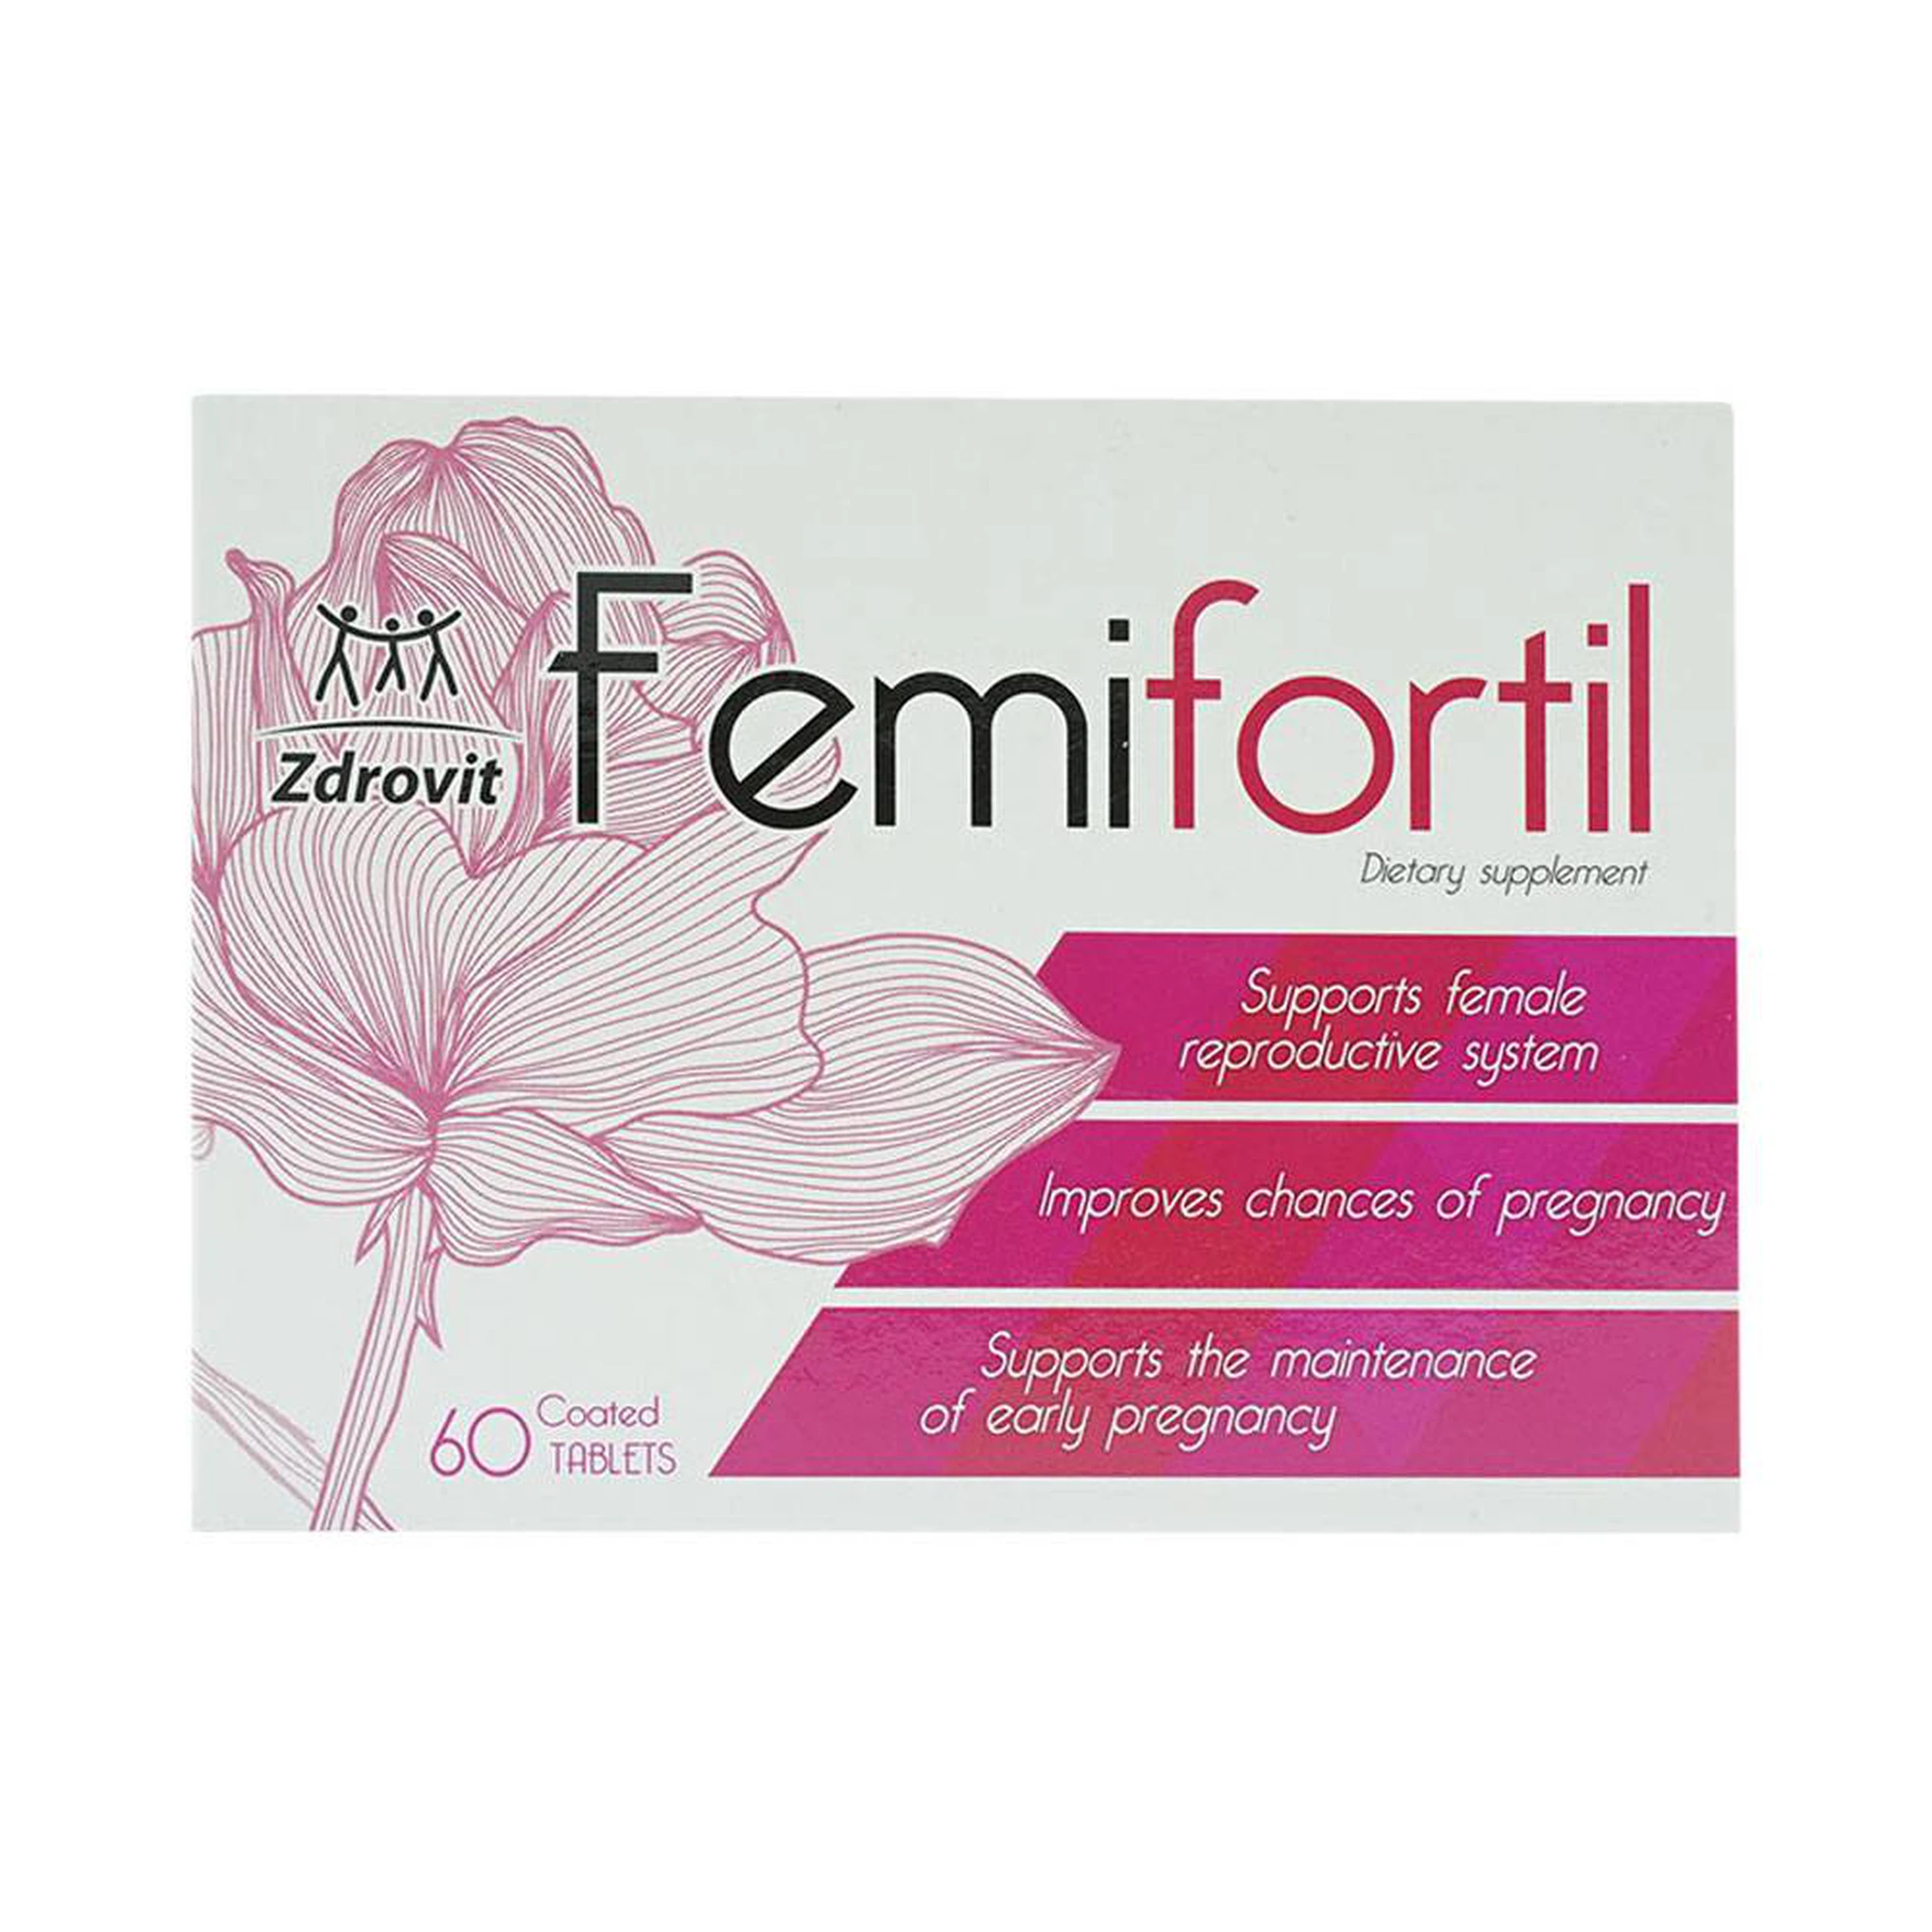 Viên nén Femifortil hỗ trợ Vitamin, khoáng chất cho bà bầu (4 vỉ x 15 viên)